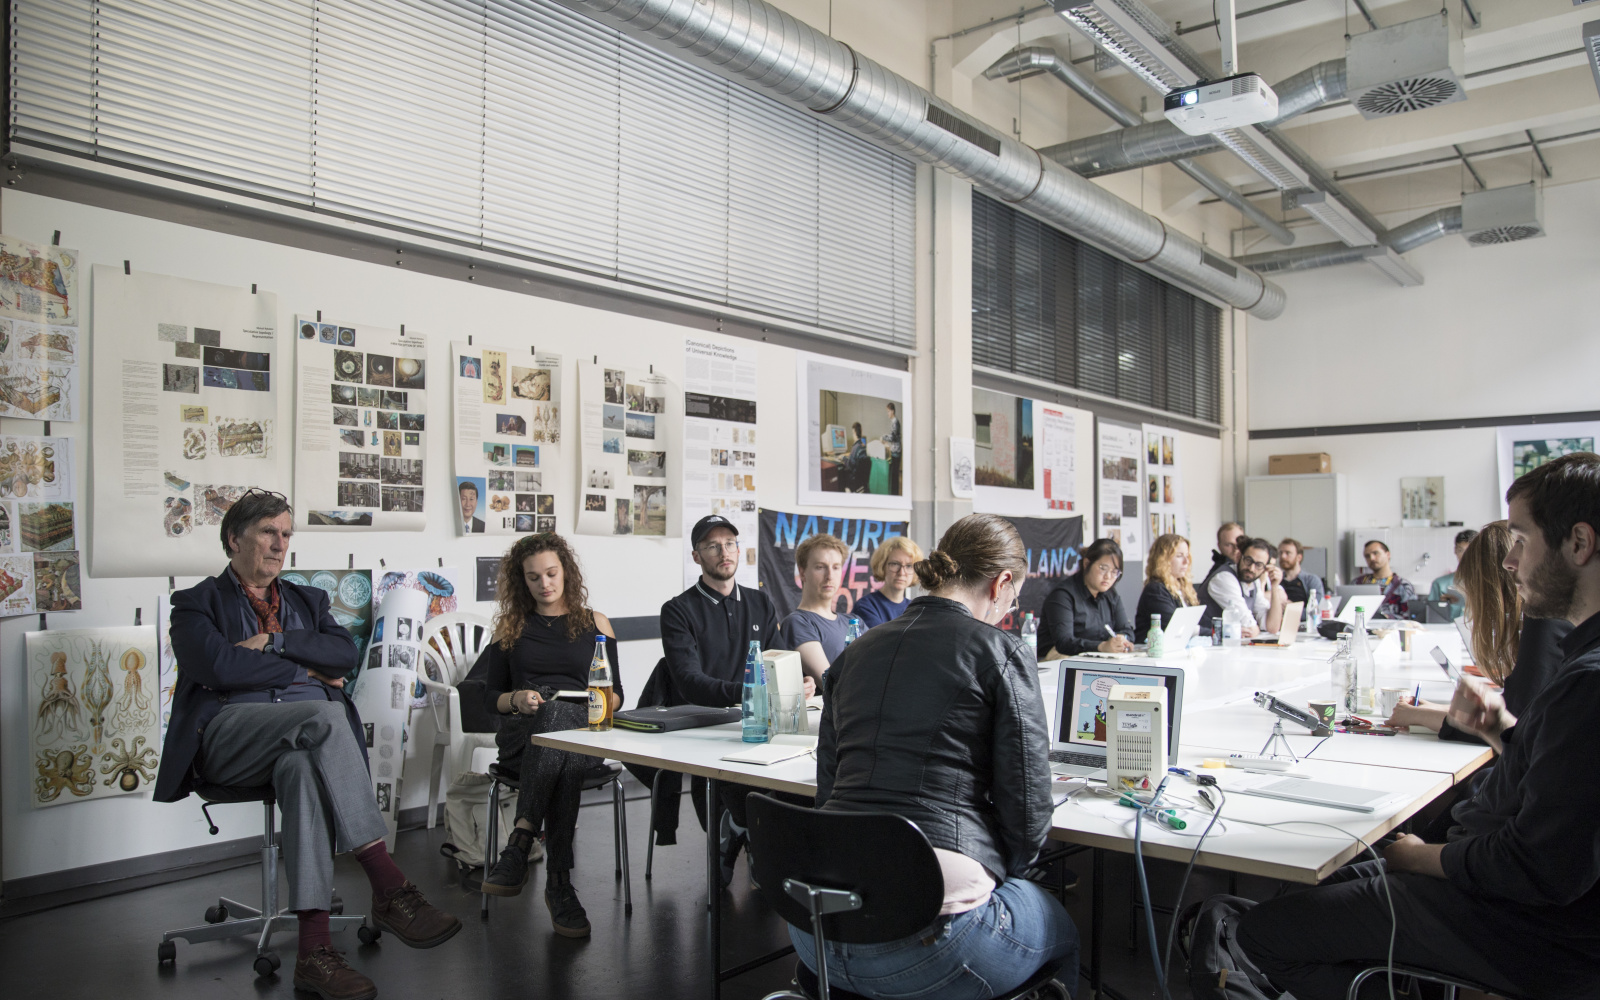 Critical Zones Forschungsseminar an der Staatlichen Hochschule für Gestaltung Karlsruhe (HfG) während der Sitzung im Mai 2018